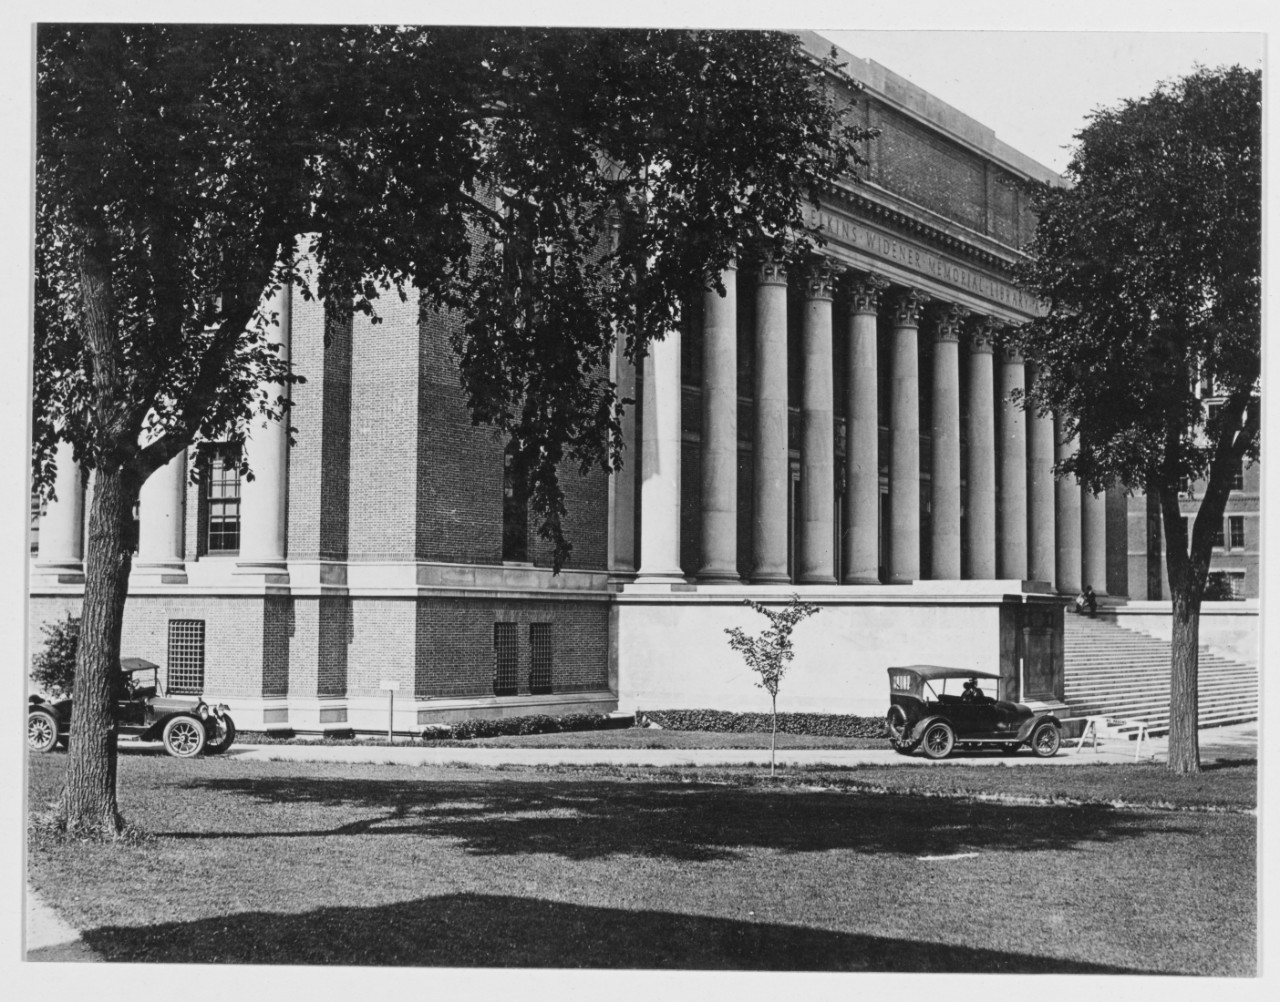 Officer Material School, Harvard University, June 28, 1919